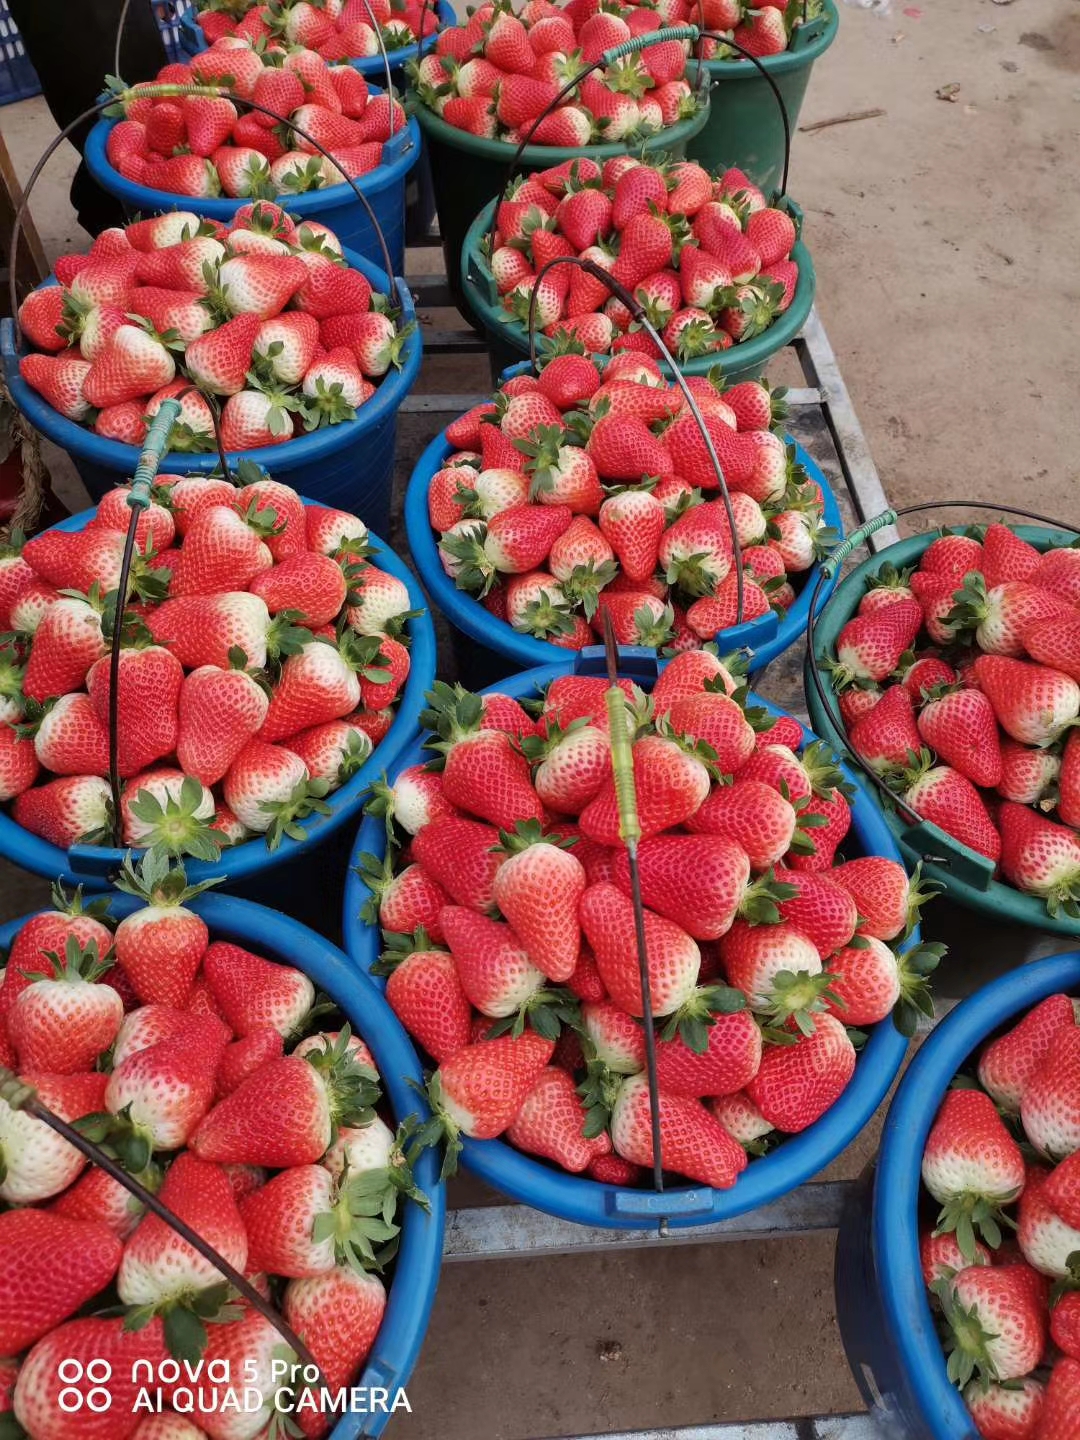 红颜草莓苗价格,白雪草莓苗价格